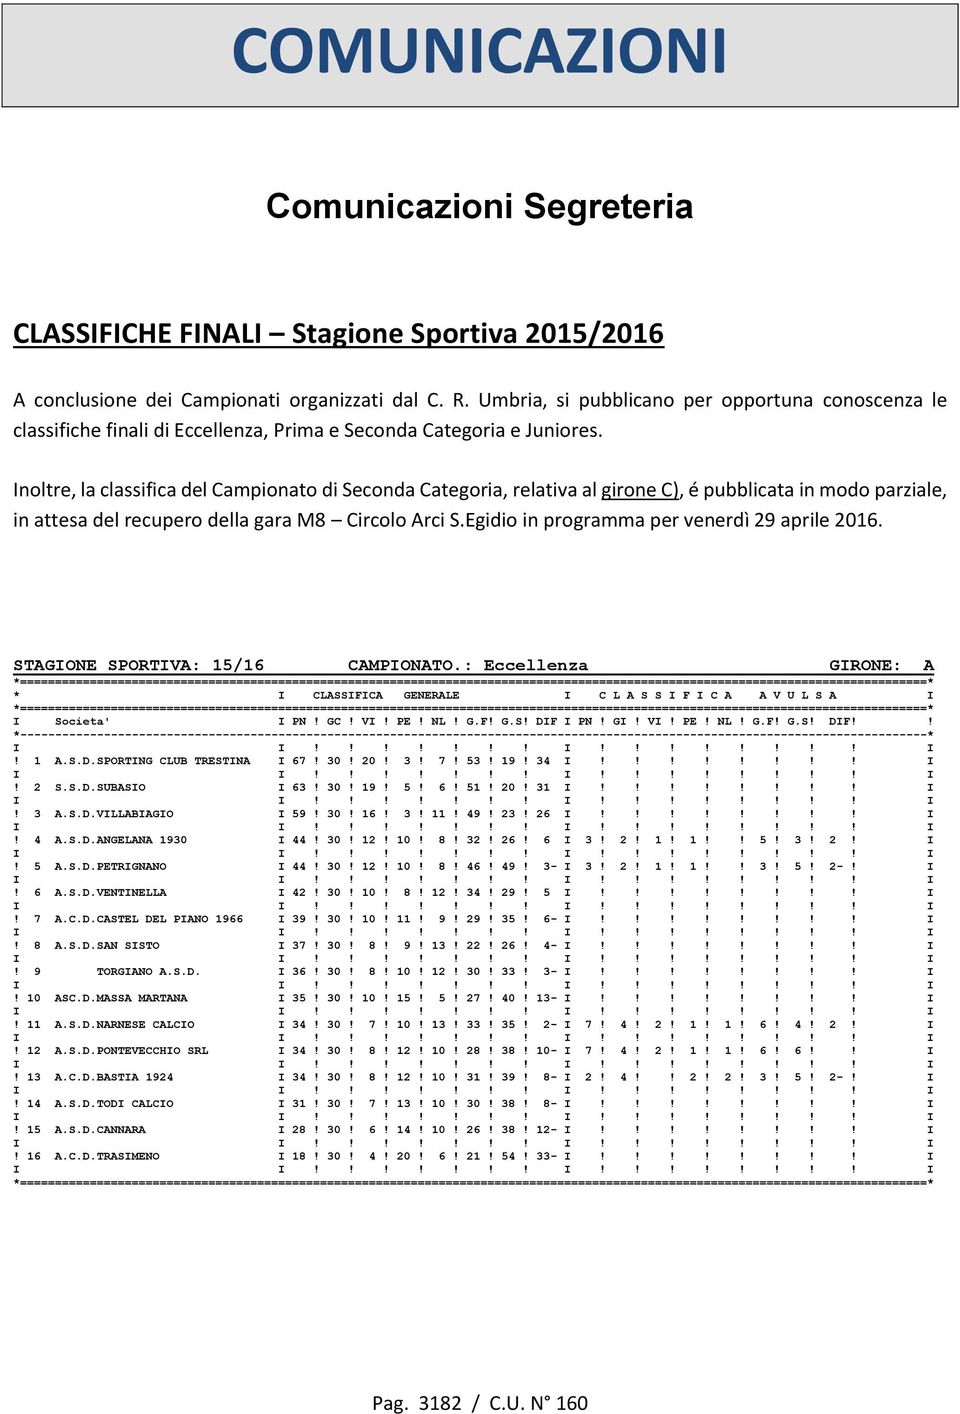 Inoltre, la classifica del Campionato di Seconda Categoria, relativa al girone C), é pubblicata in modo parziale, in attesa del recupero della gara M8 Circolo Arci S.